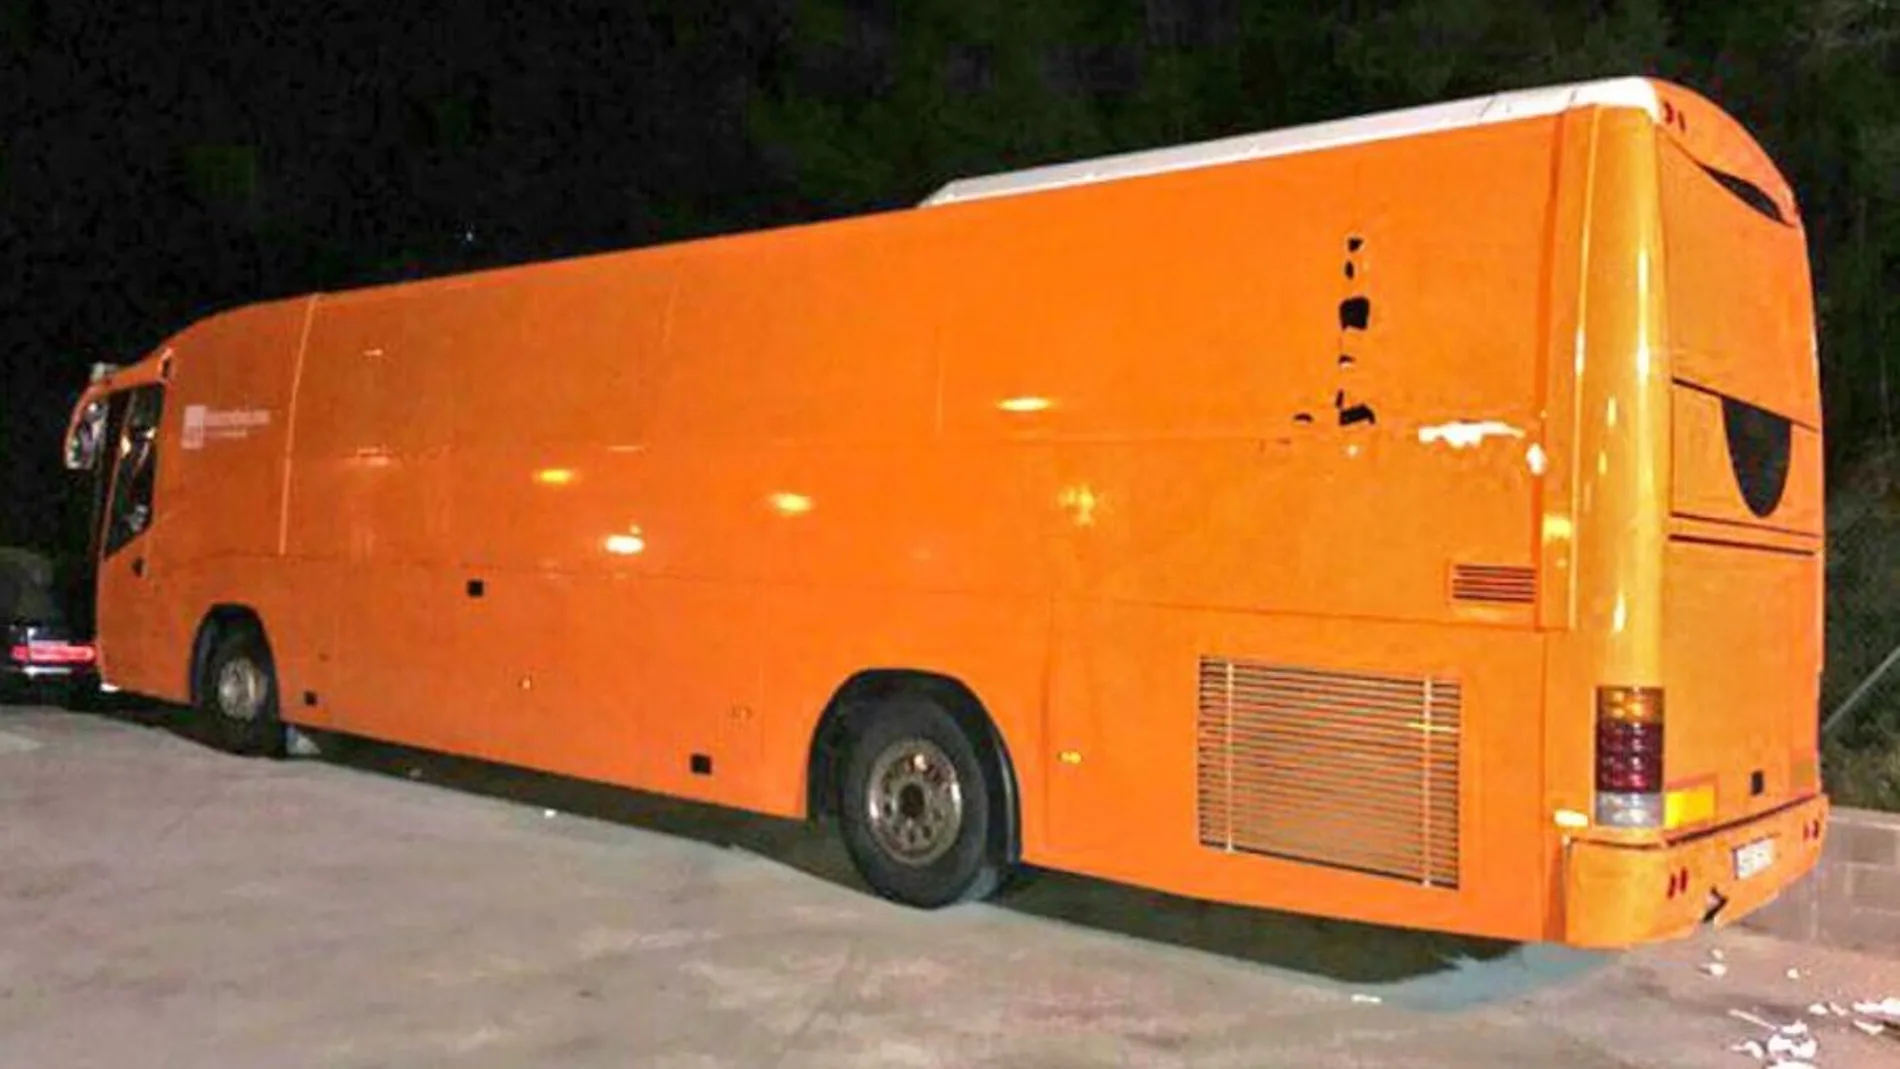 El bus tránsfobo de HazteOír sin los vinilos